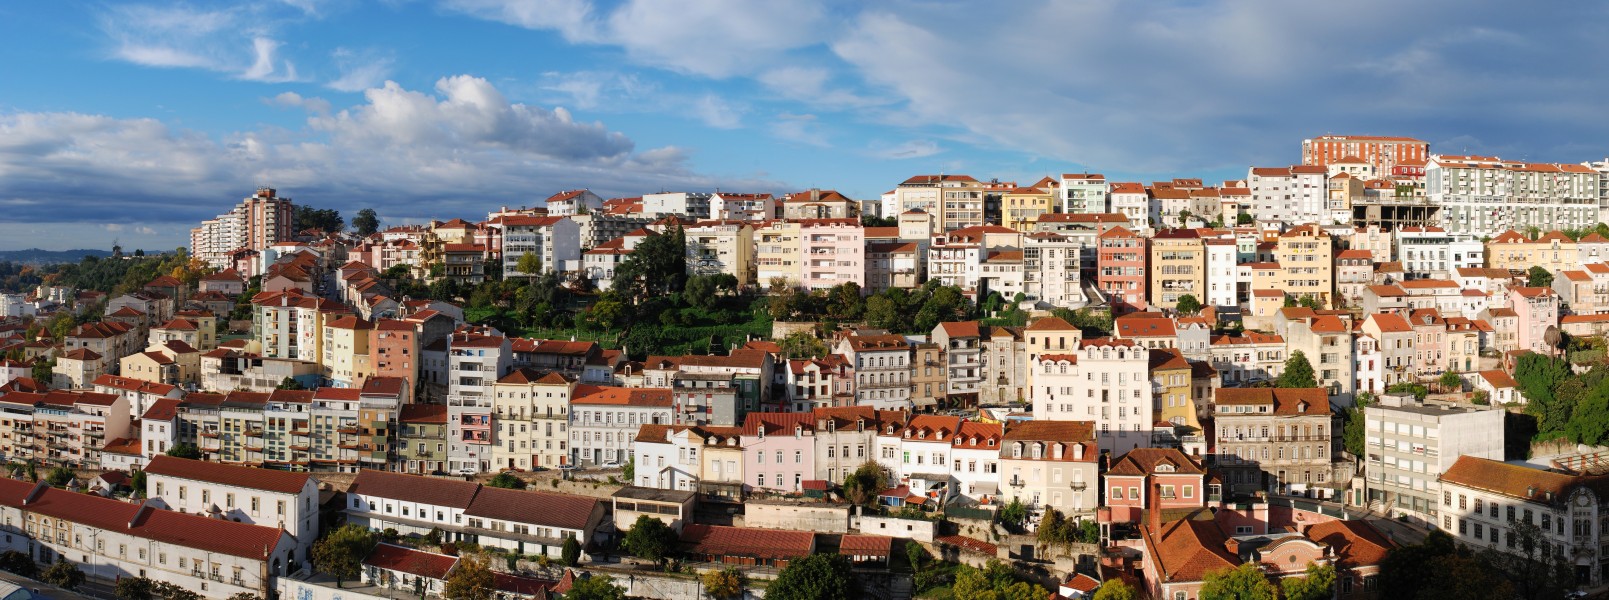 Coimbra November 2012-1